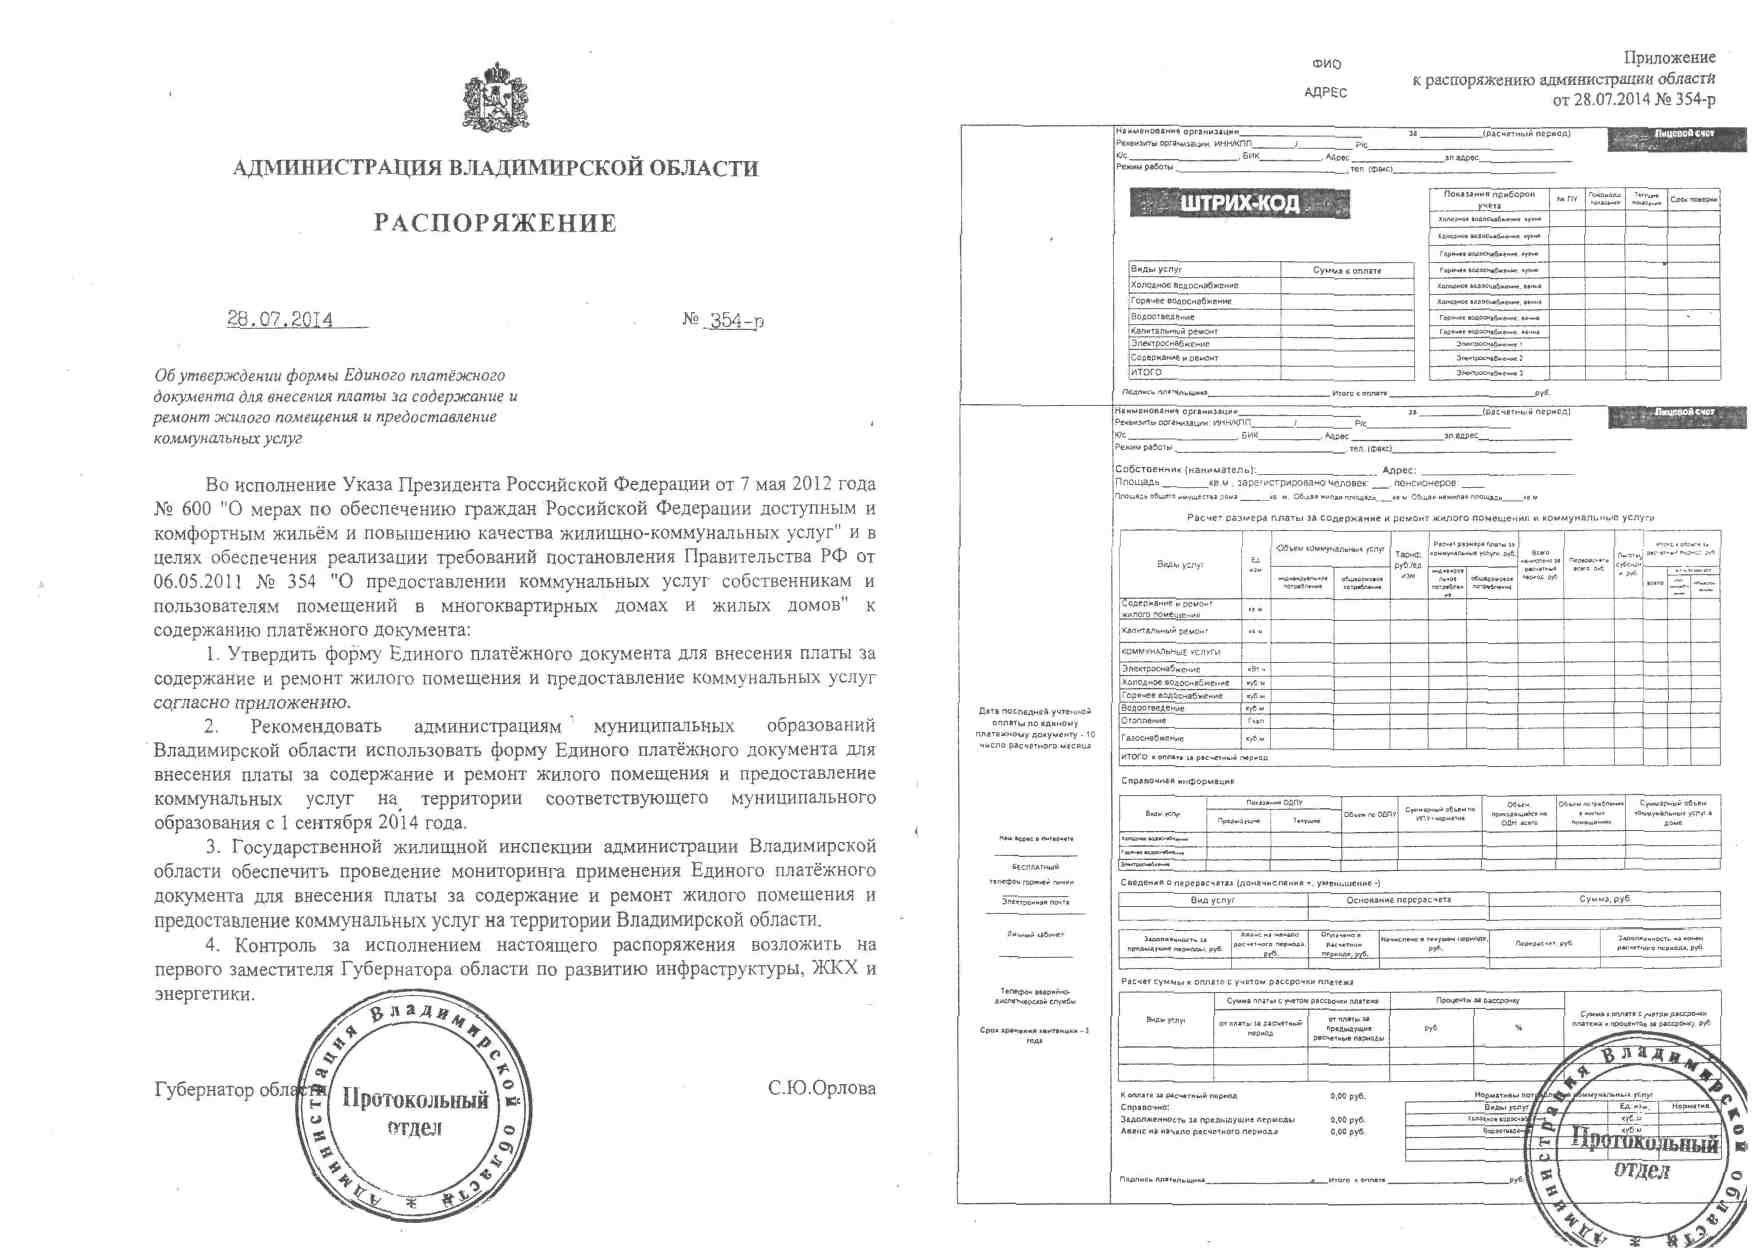 Распоряжение администрации Владимирской области от 28.06.2014 об утверждении формы Единого платежного документа.